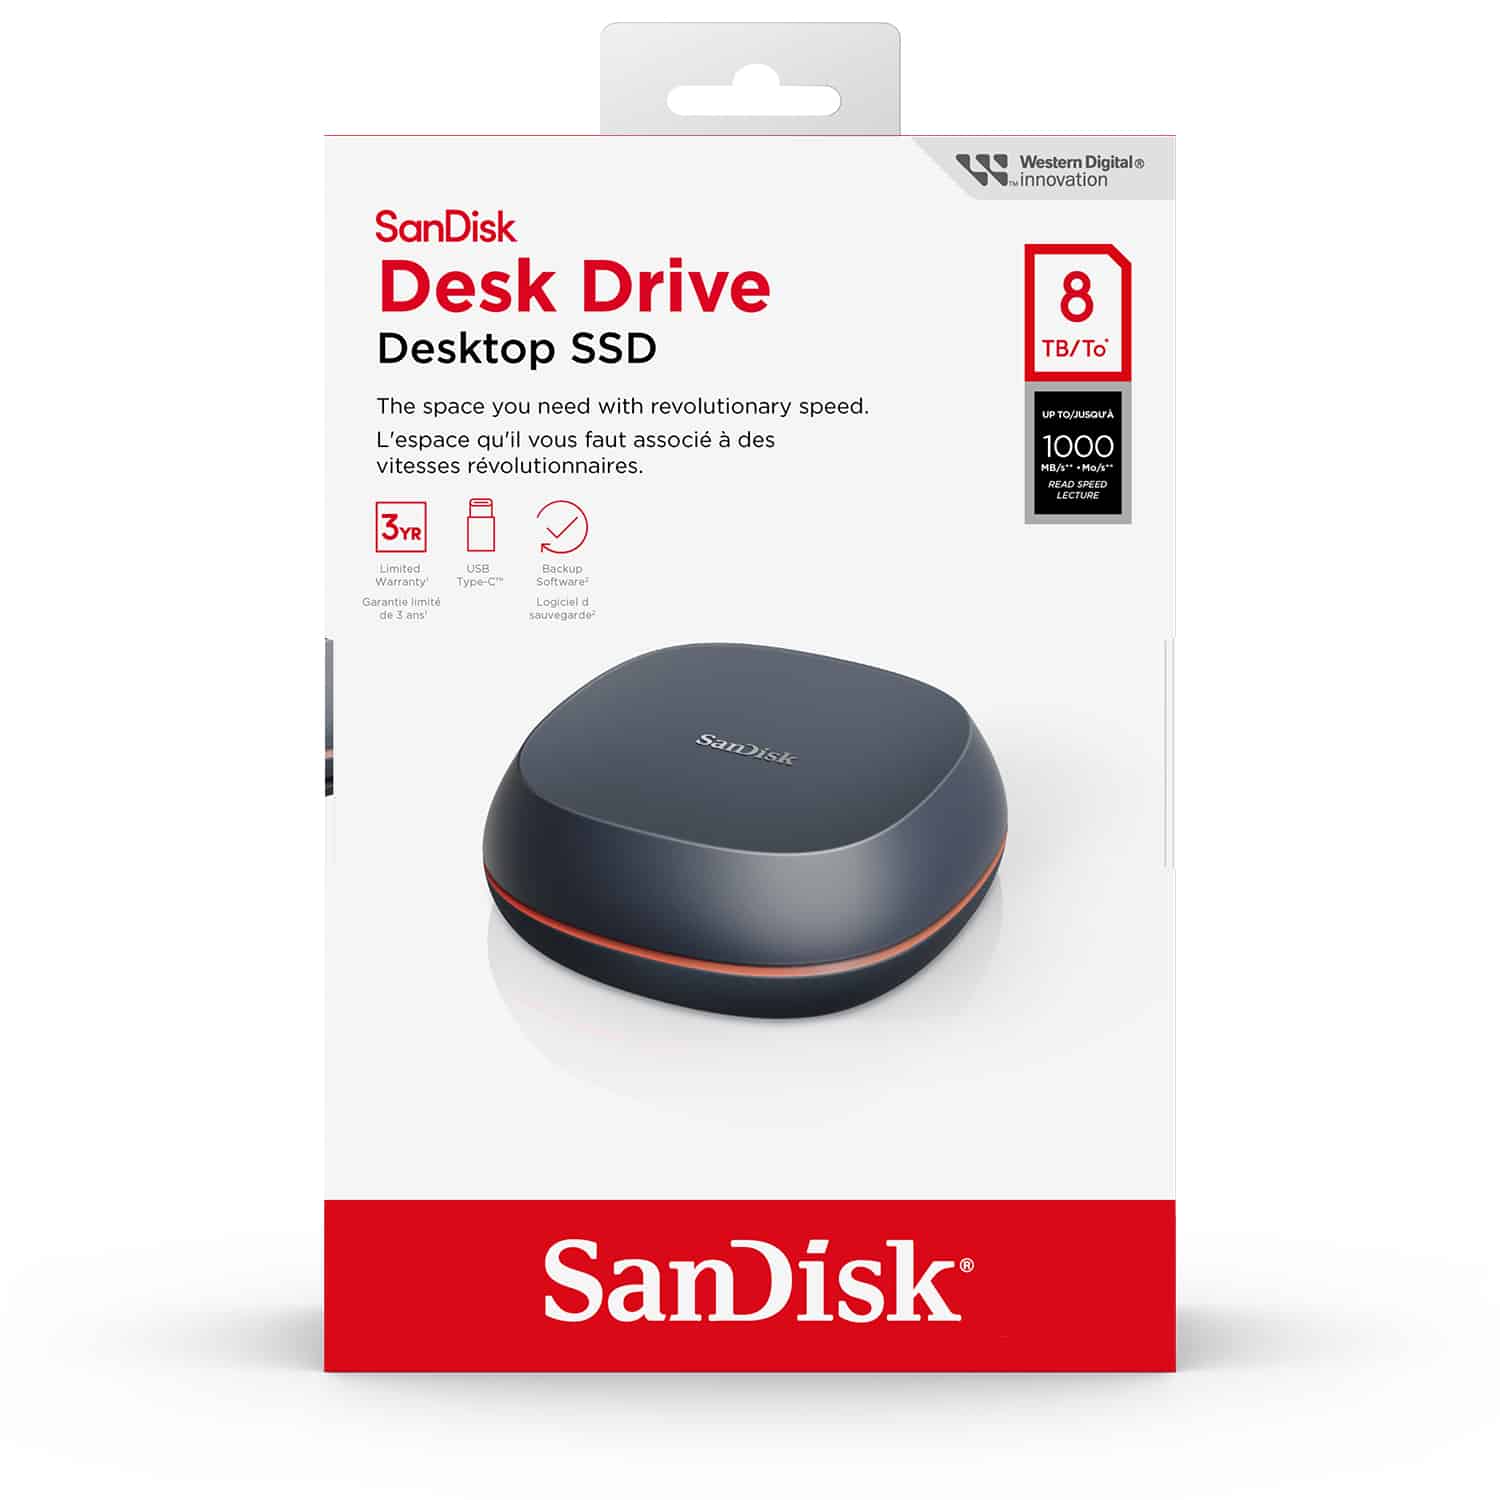 PKG: SanDisk Desk Drive, Desktop SSD, 4TB/8TB, NAM, Front/Back/L